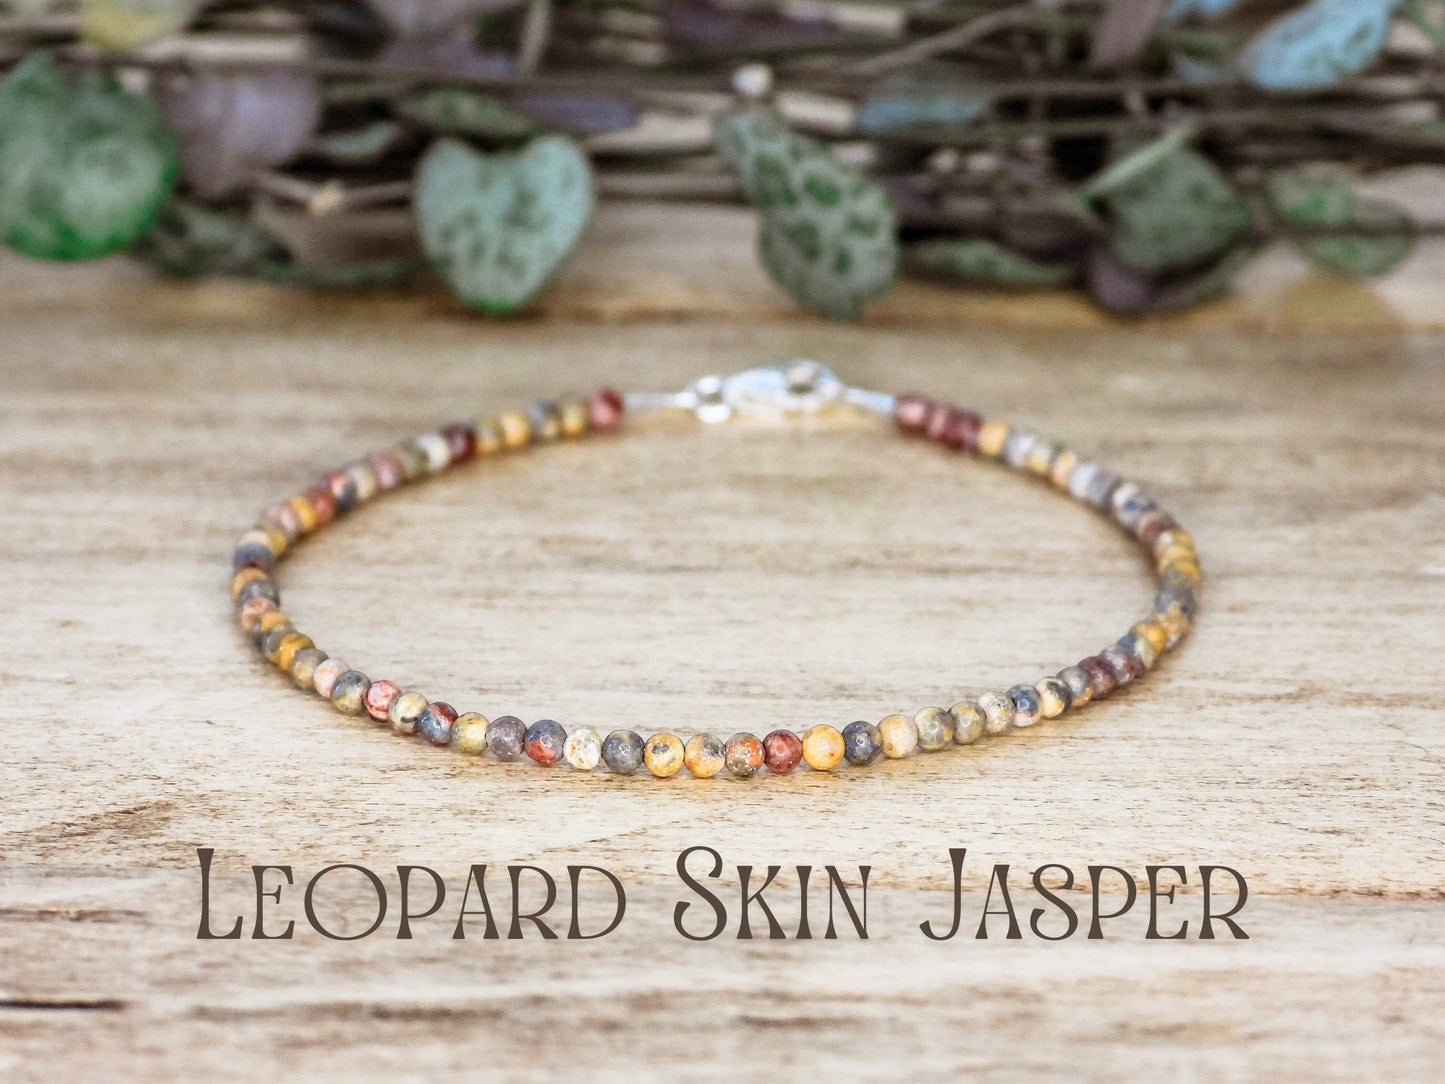 Dainty Leopard Skin Jasper "Perception" Gemstone Bracelet